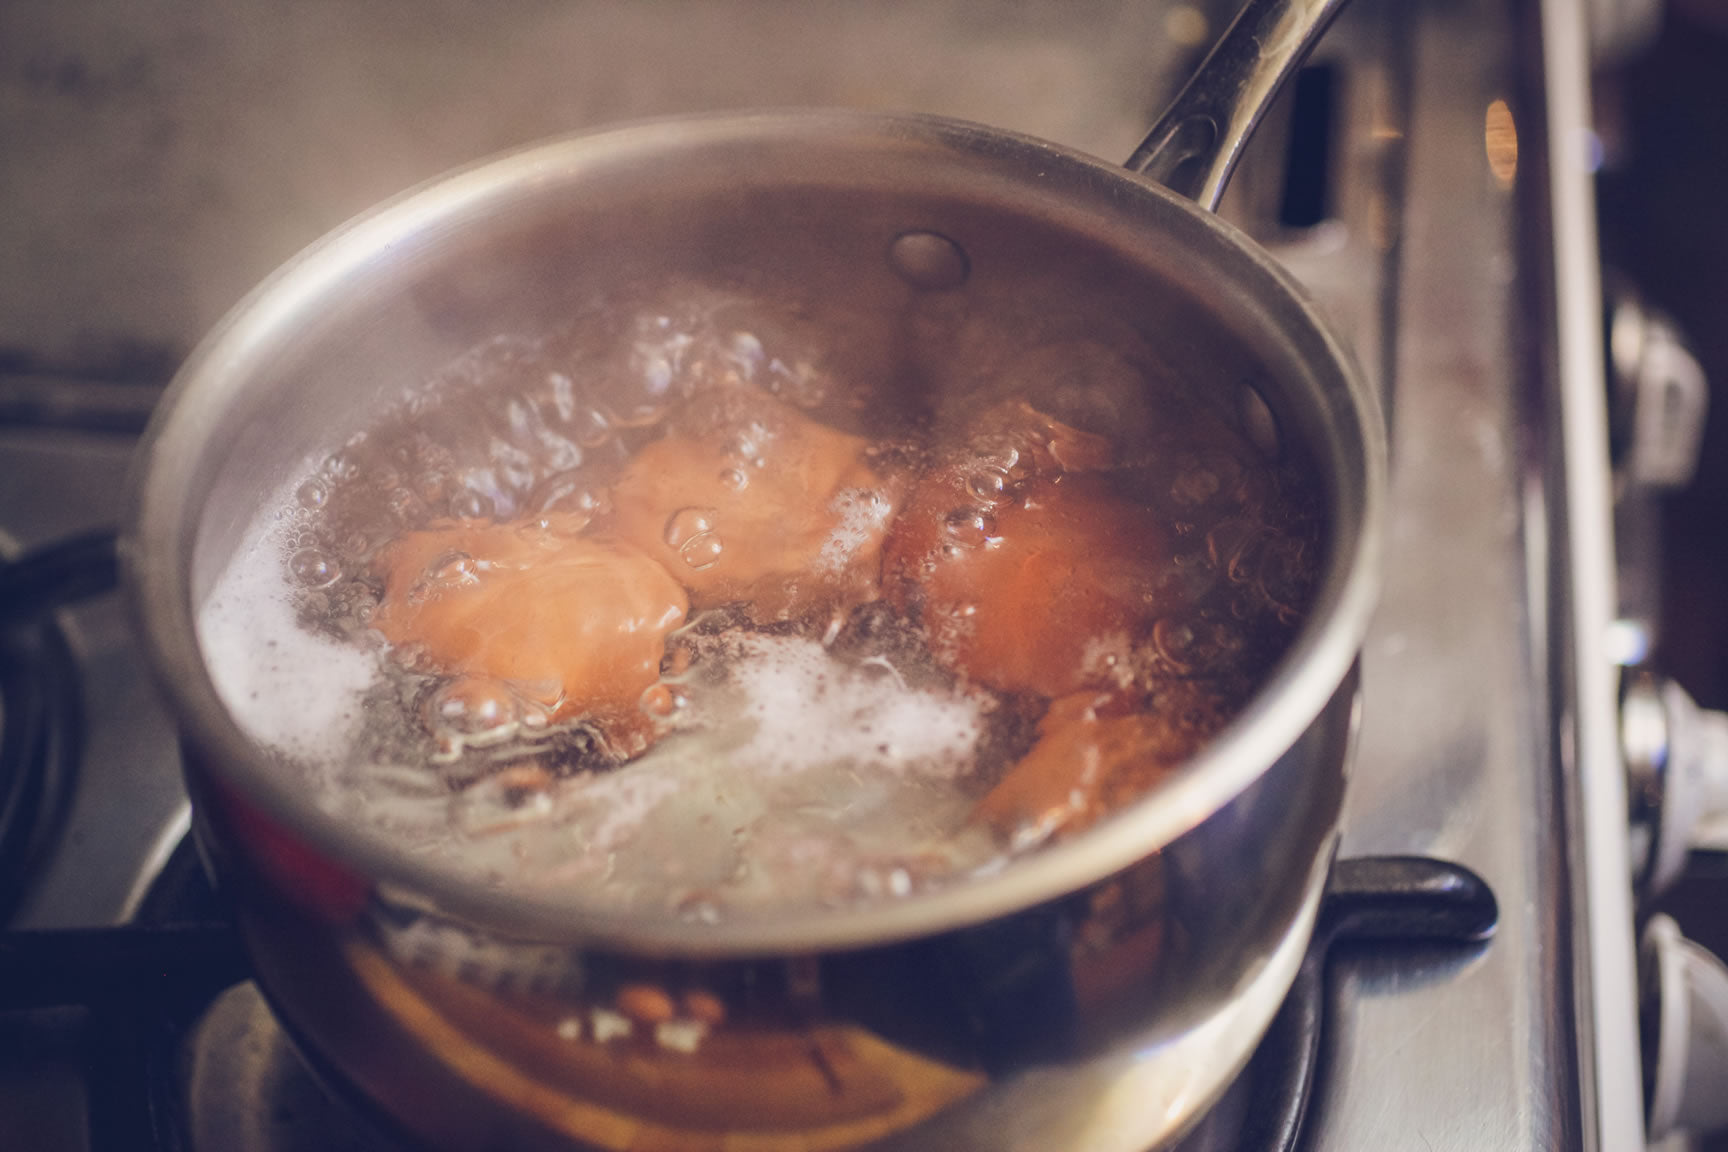 hard boil the eggs